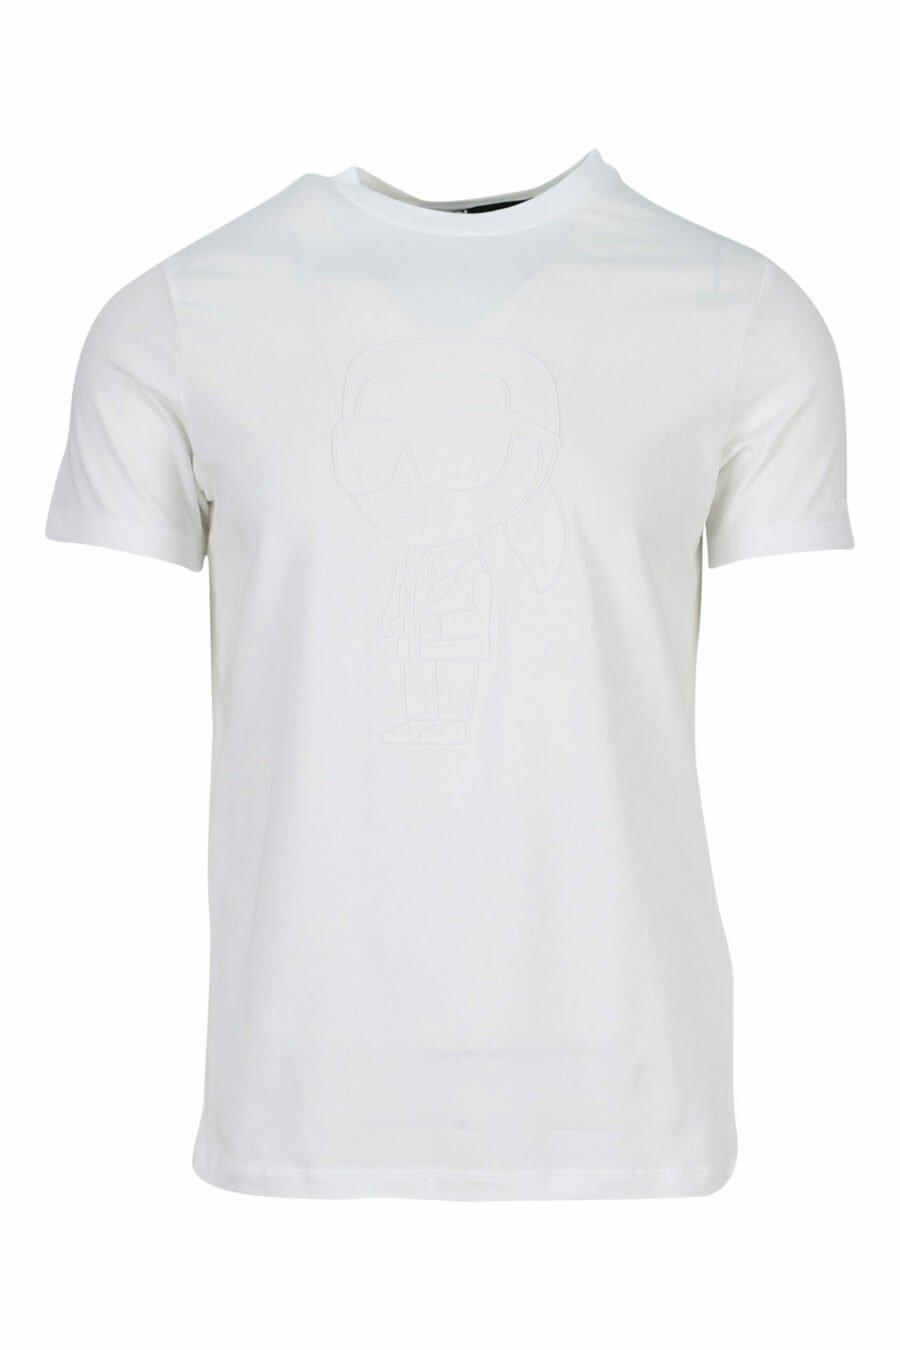 Camiseta blanca con maxilogo monocromático de goma - 4062226401180 scaled